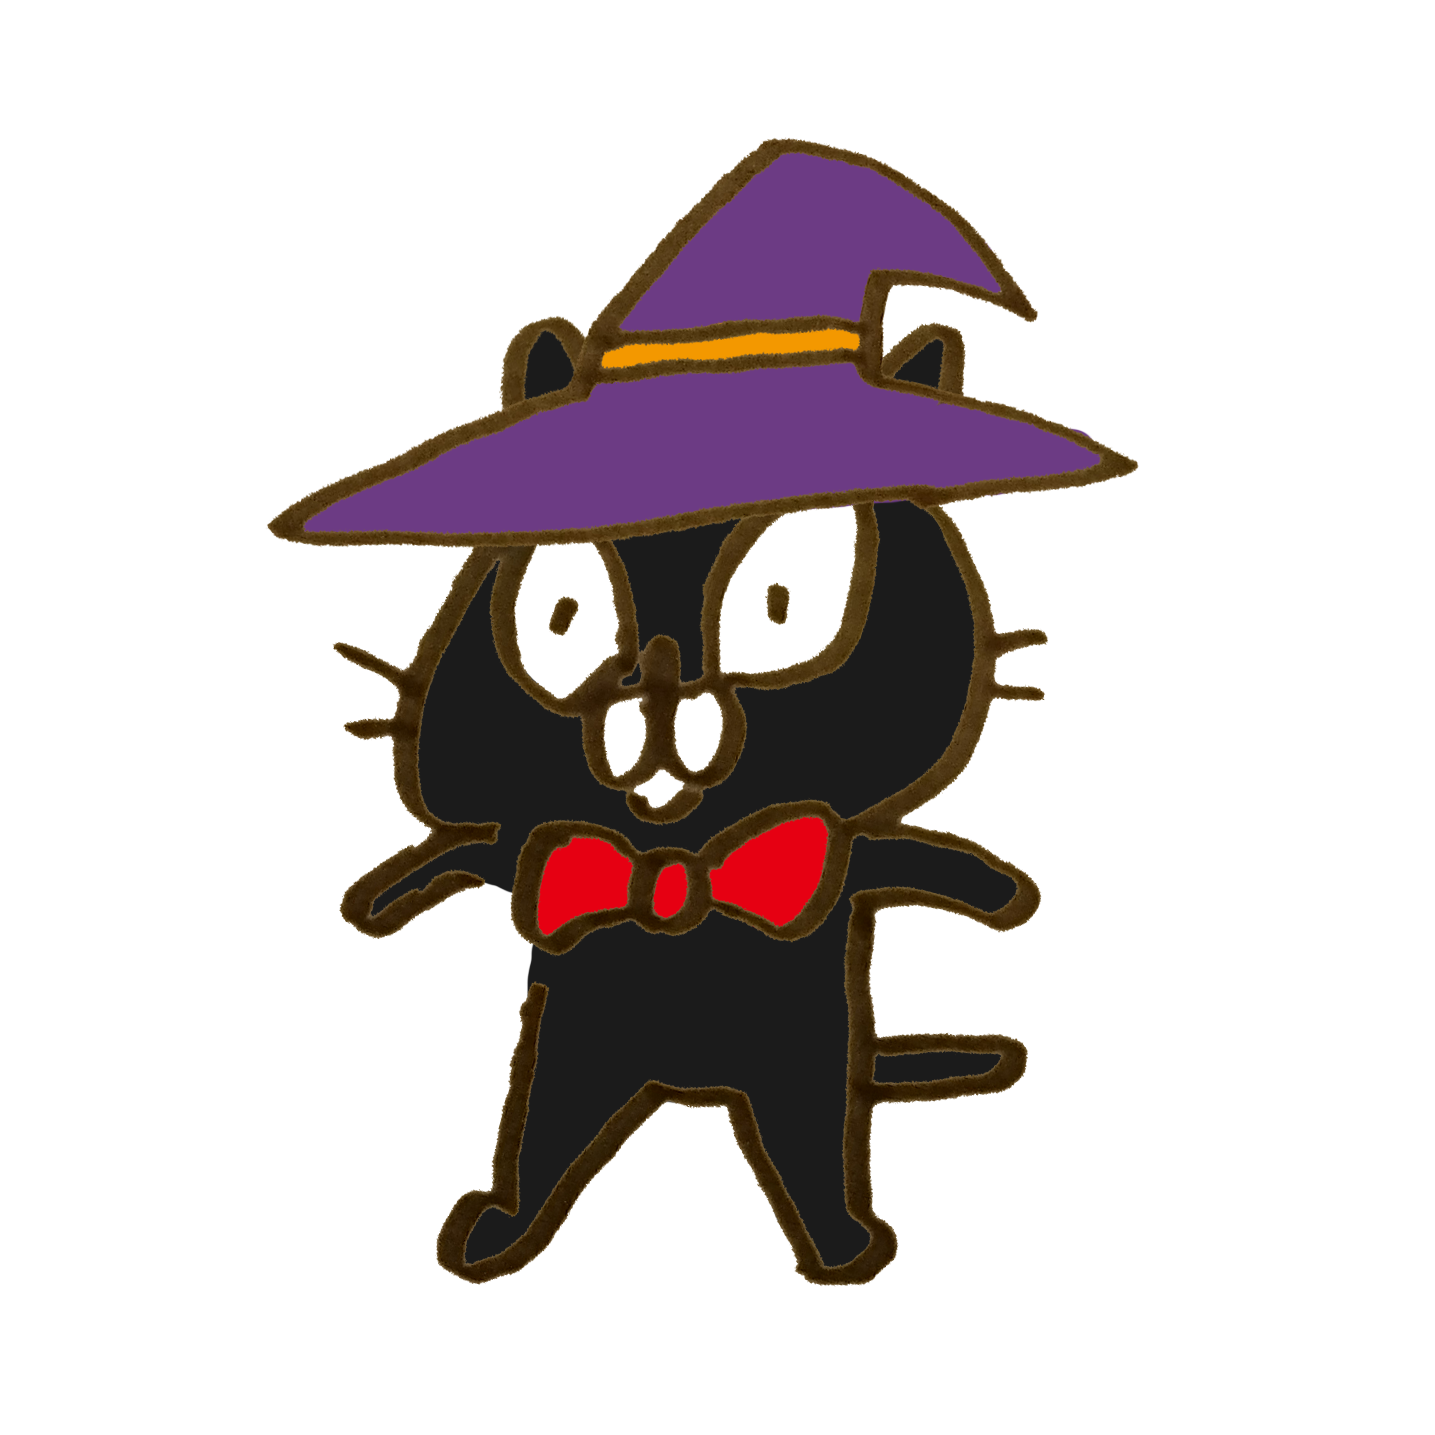 ハロウィンの帽子をかぶった黒猫のイラスト ゆるくてかわいい無料イラスト素材屋 ぴよたそ